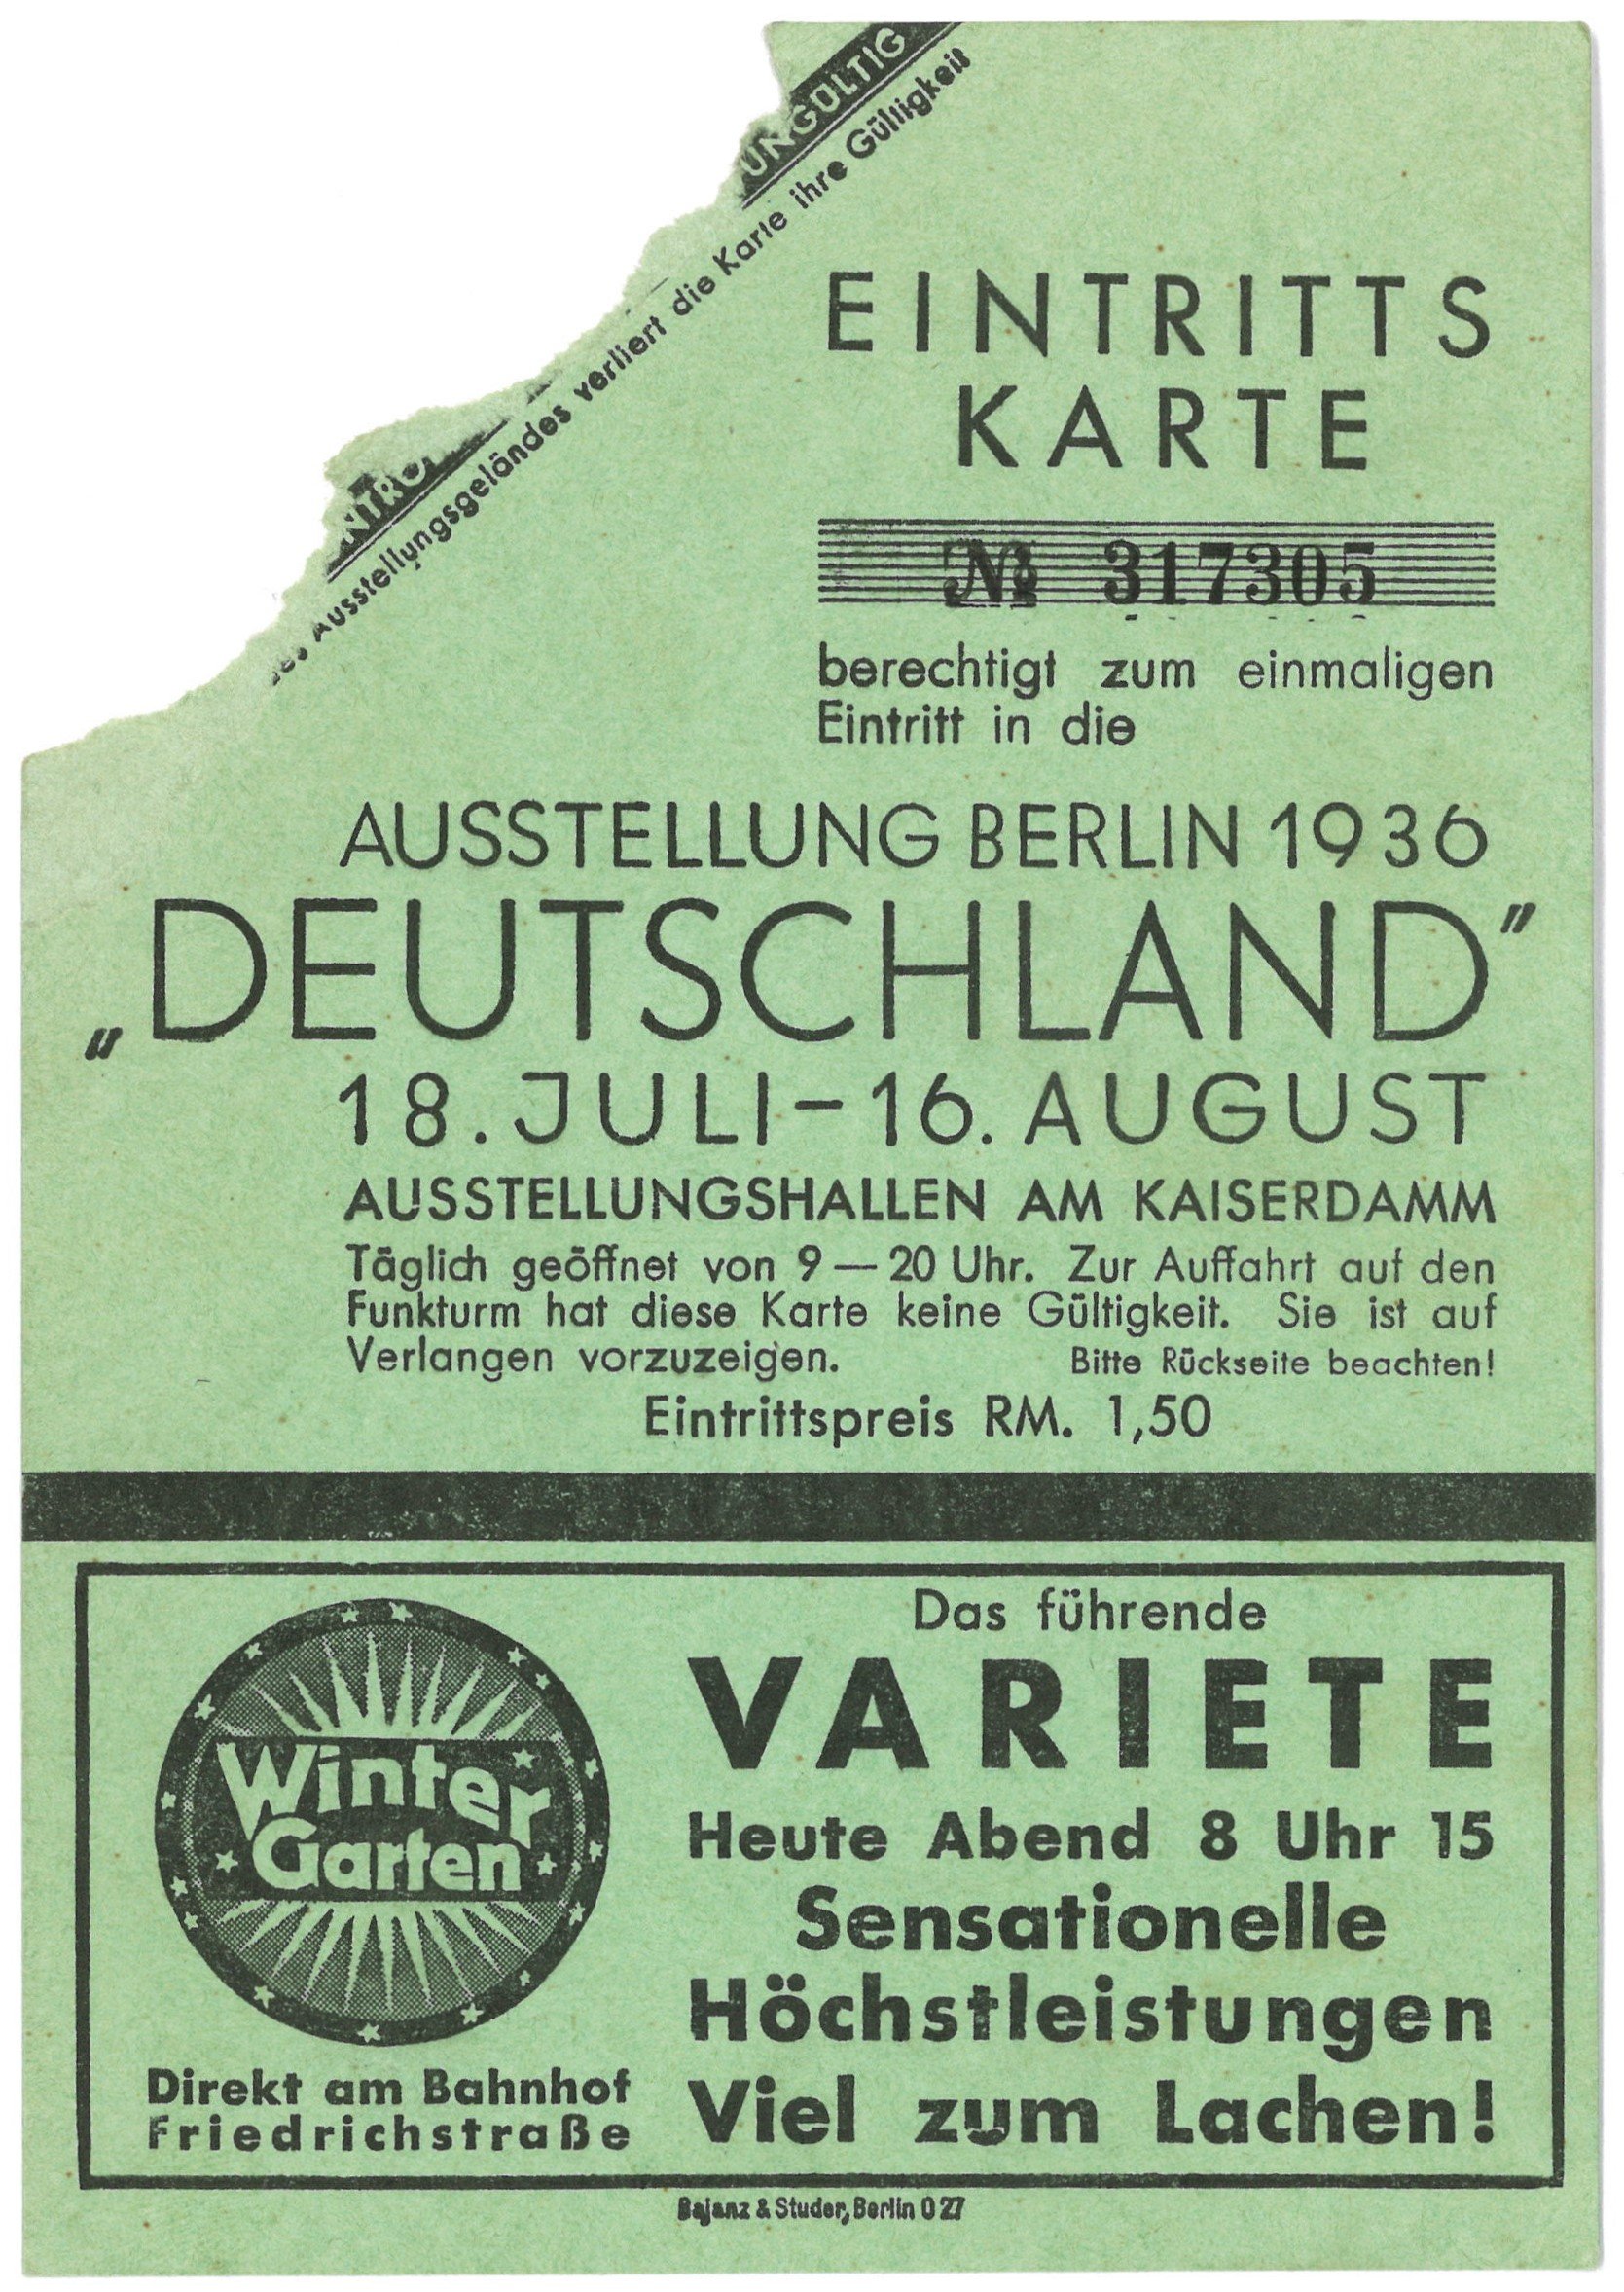 Berlin-Charlottenburg: Ausstellung Berlin 1936 "Deutschland" (Landesgeschichtliche Vereinigung für die Mark Brandenburg e.V., Archiv CC BY)